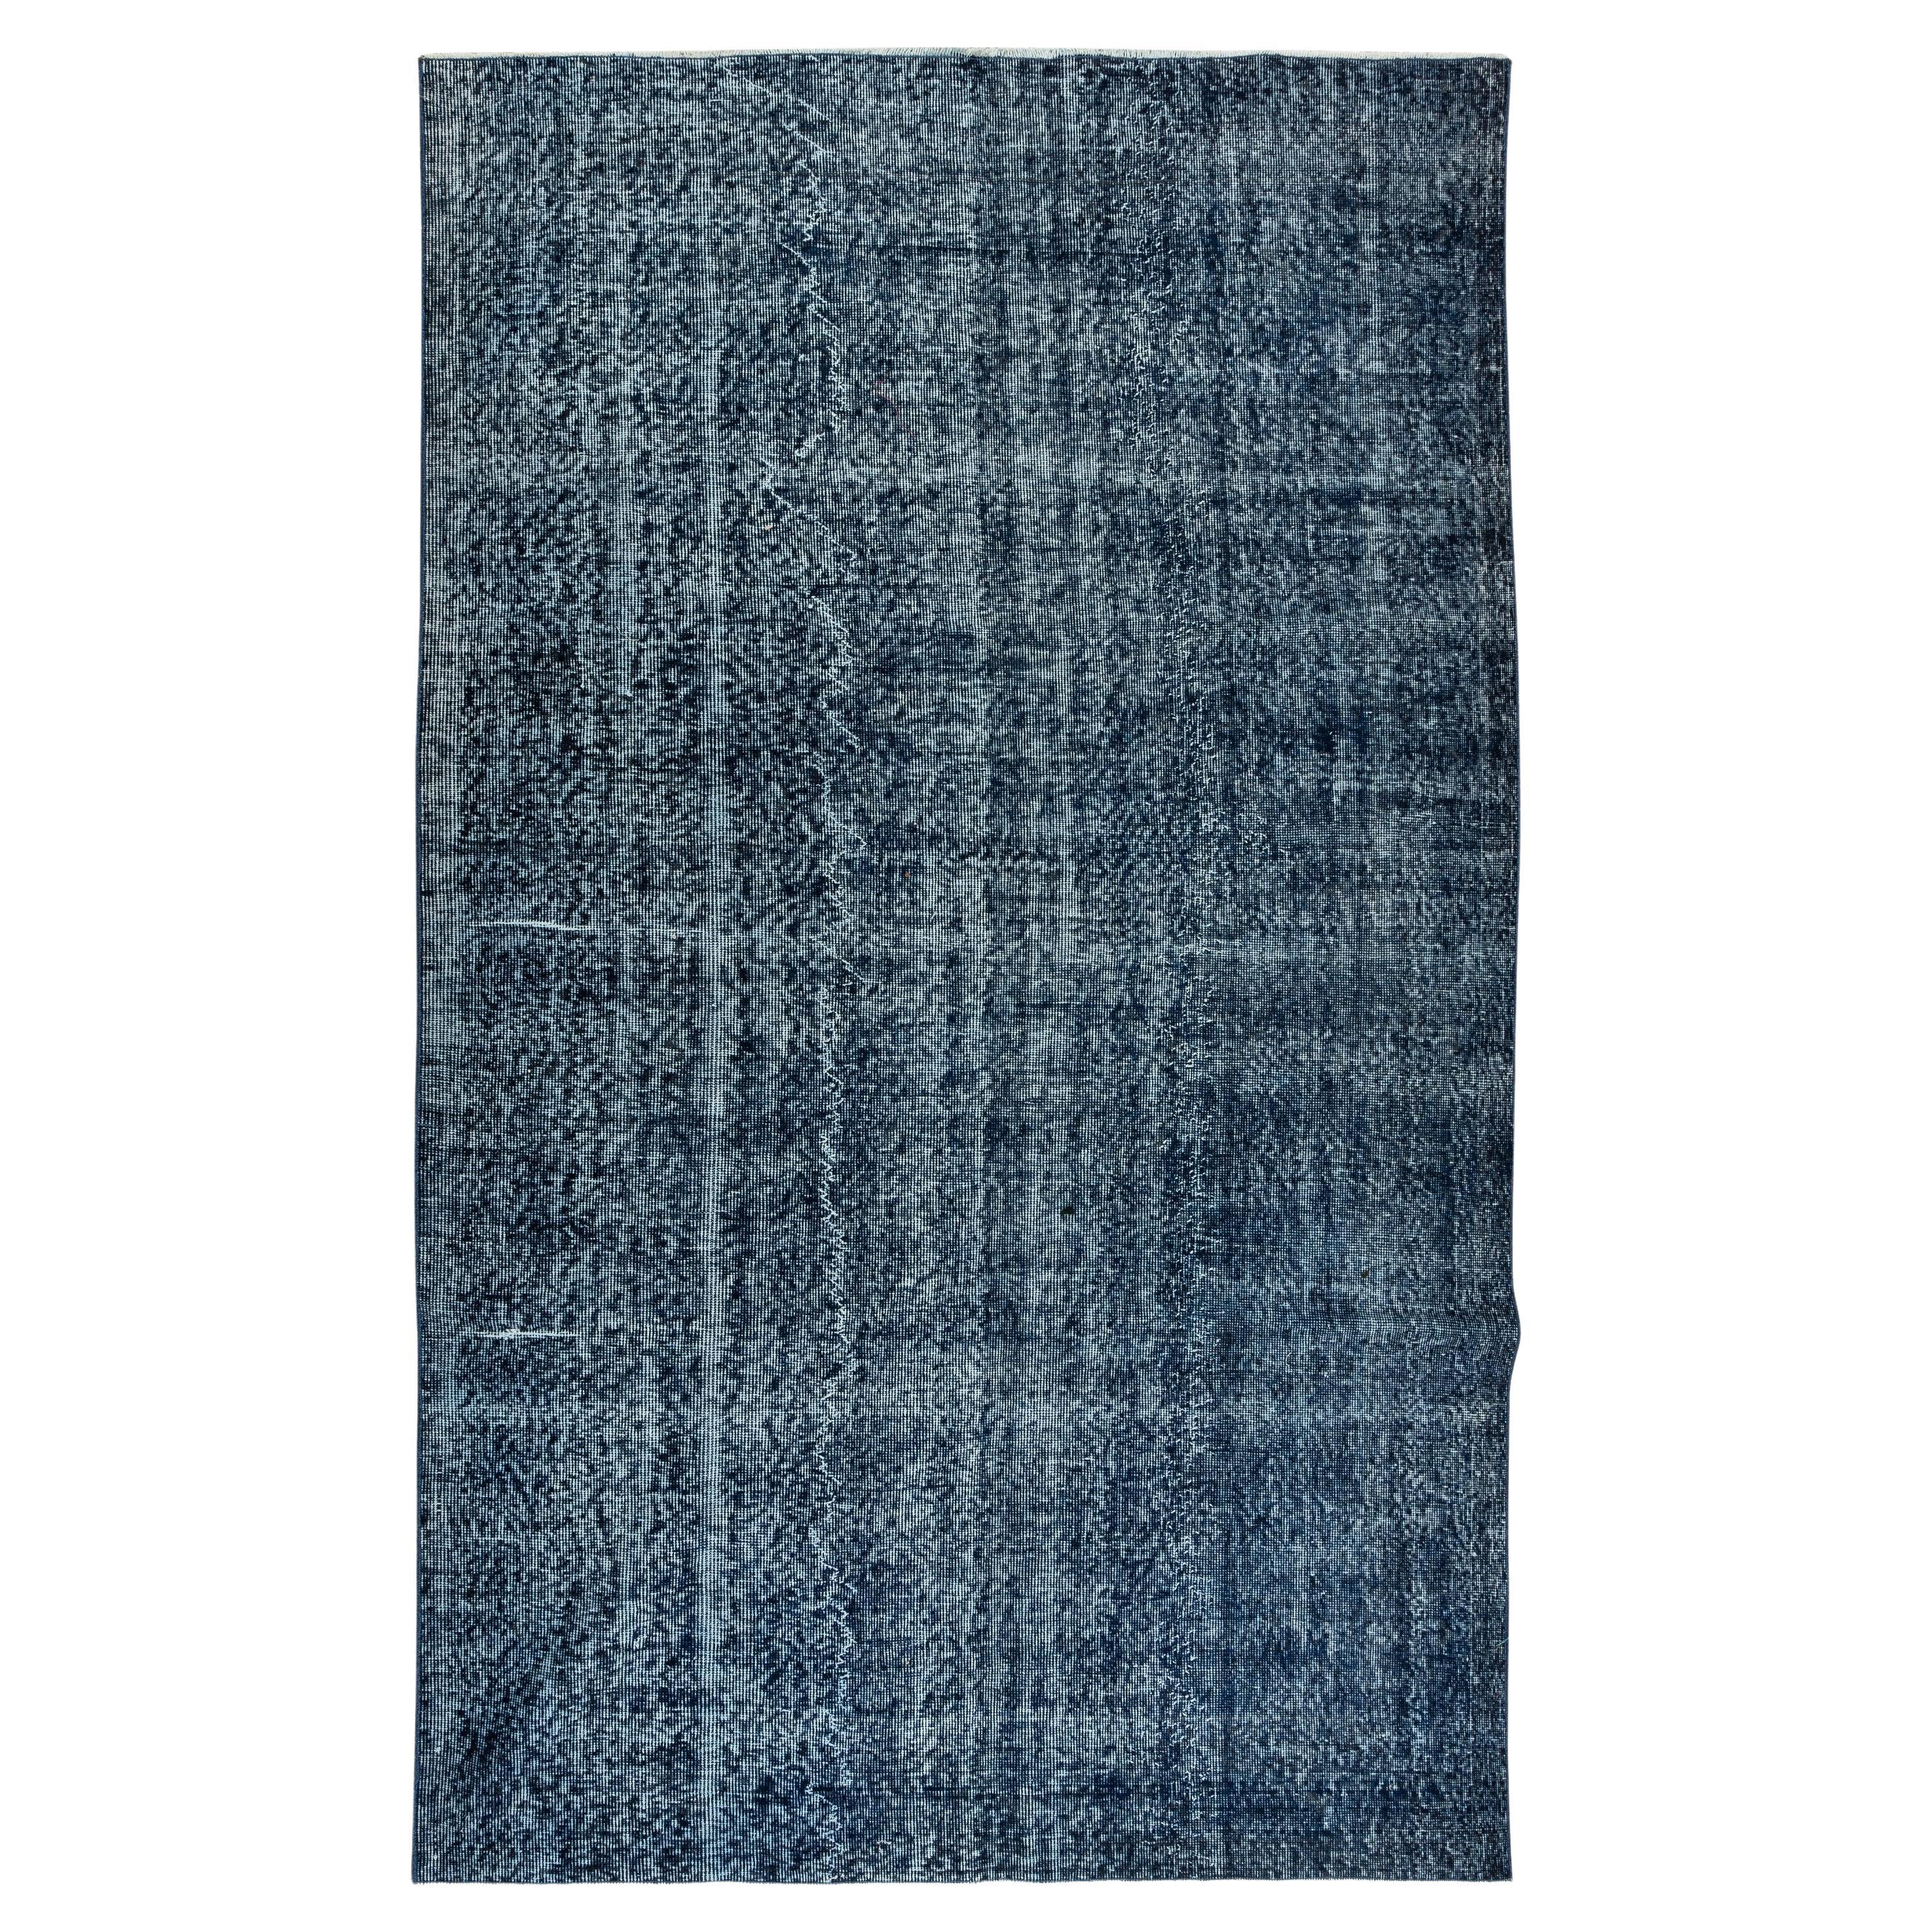 5.6x9.2 Ft Moderner marineblauer Teppich, handgefertigter türkischer Wollteppich, Vintage